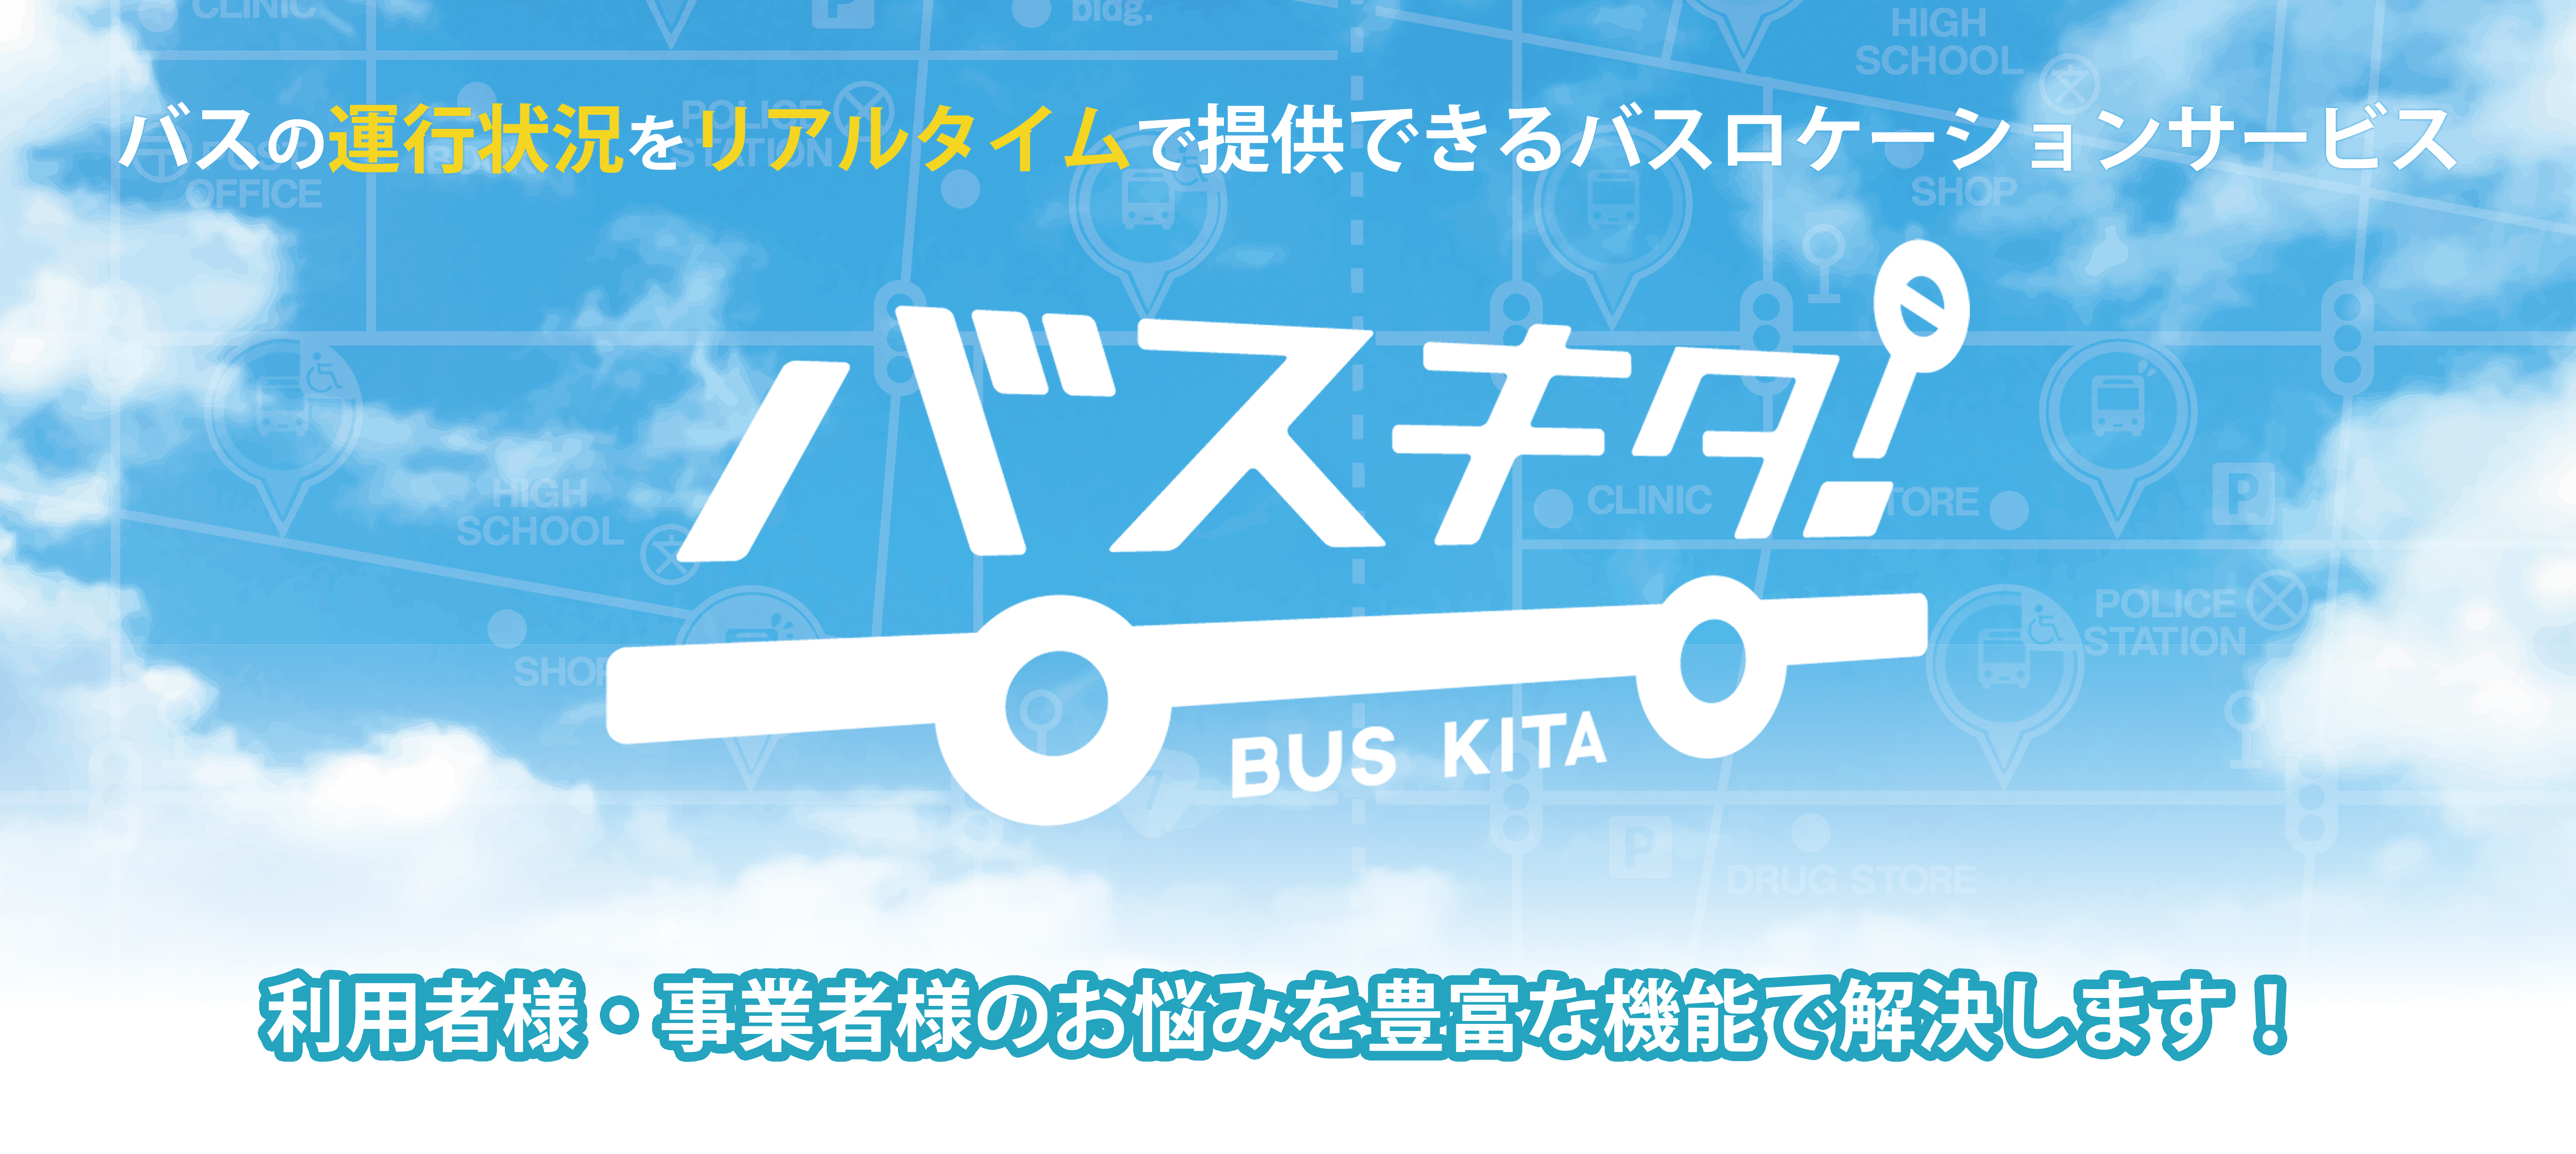 バスの運行状況をリアルタイムで提供できるバスロケーションサービス「バスキタ！」